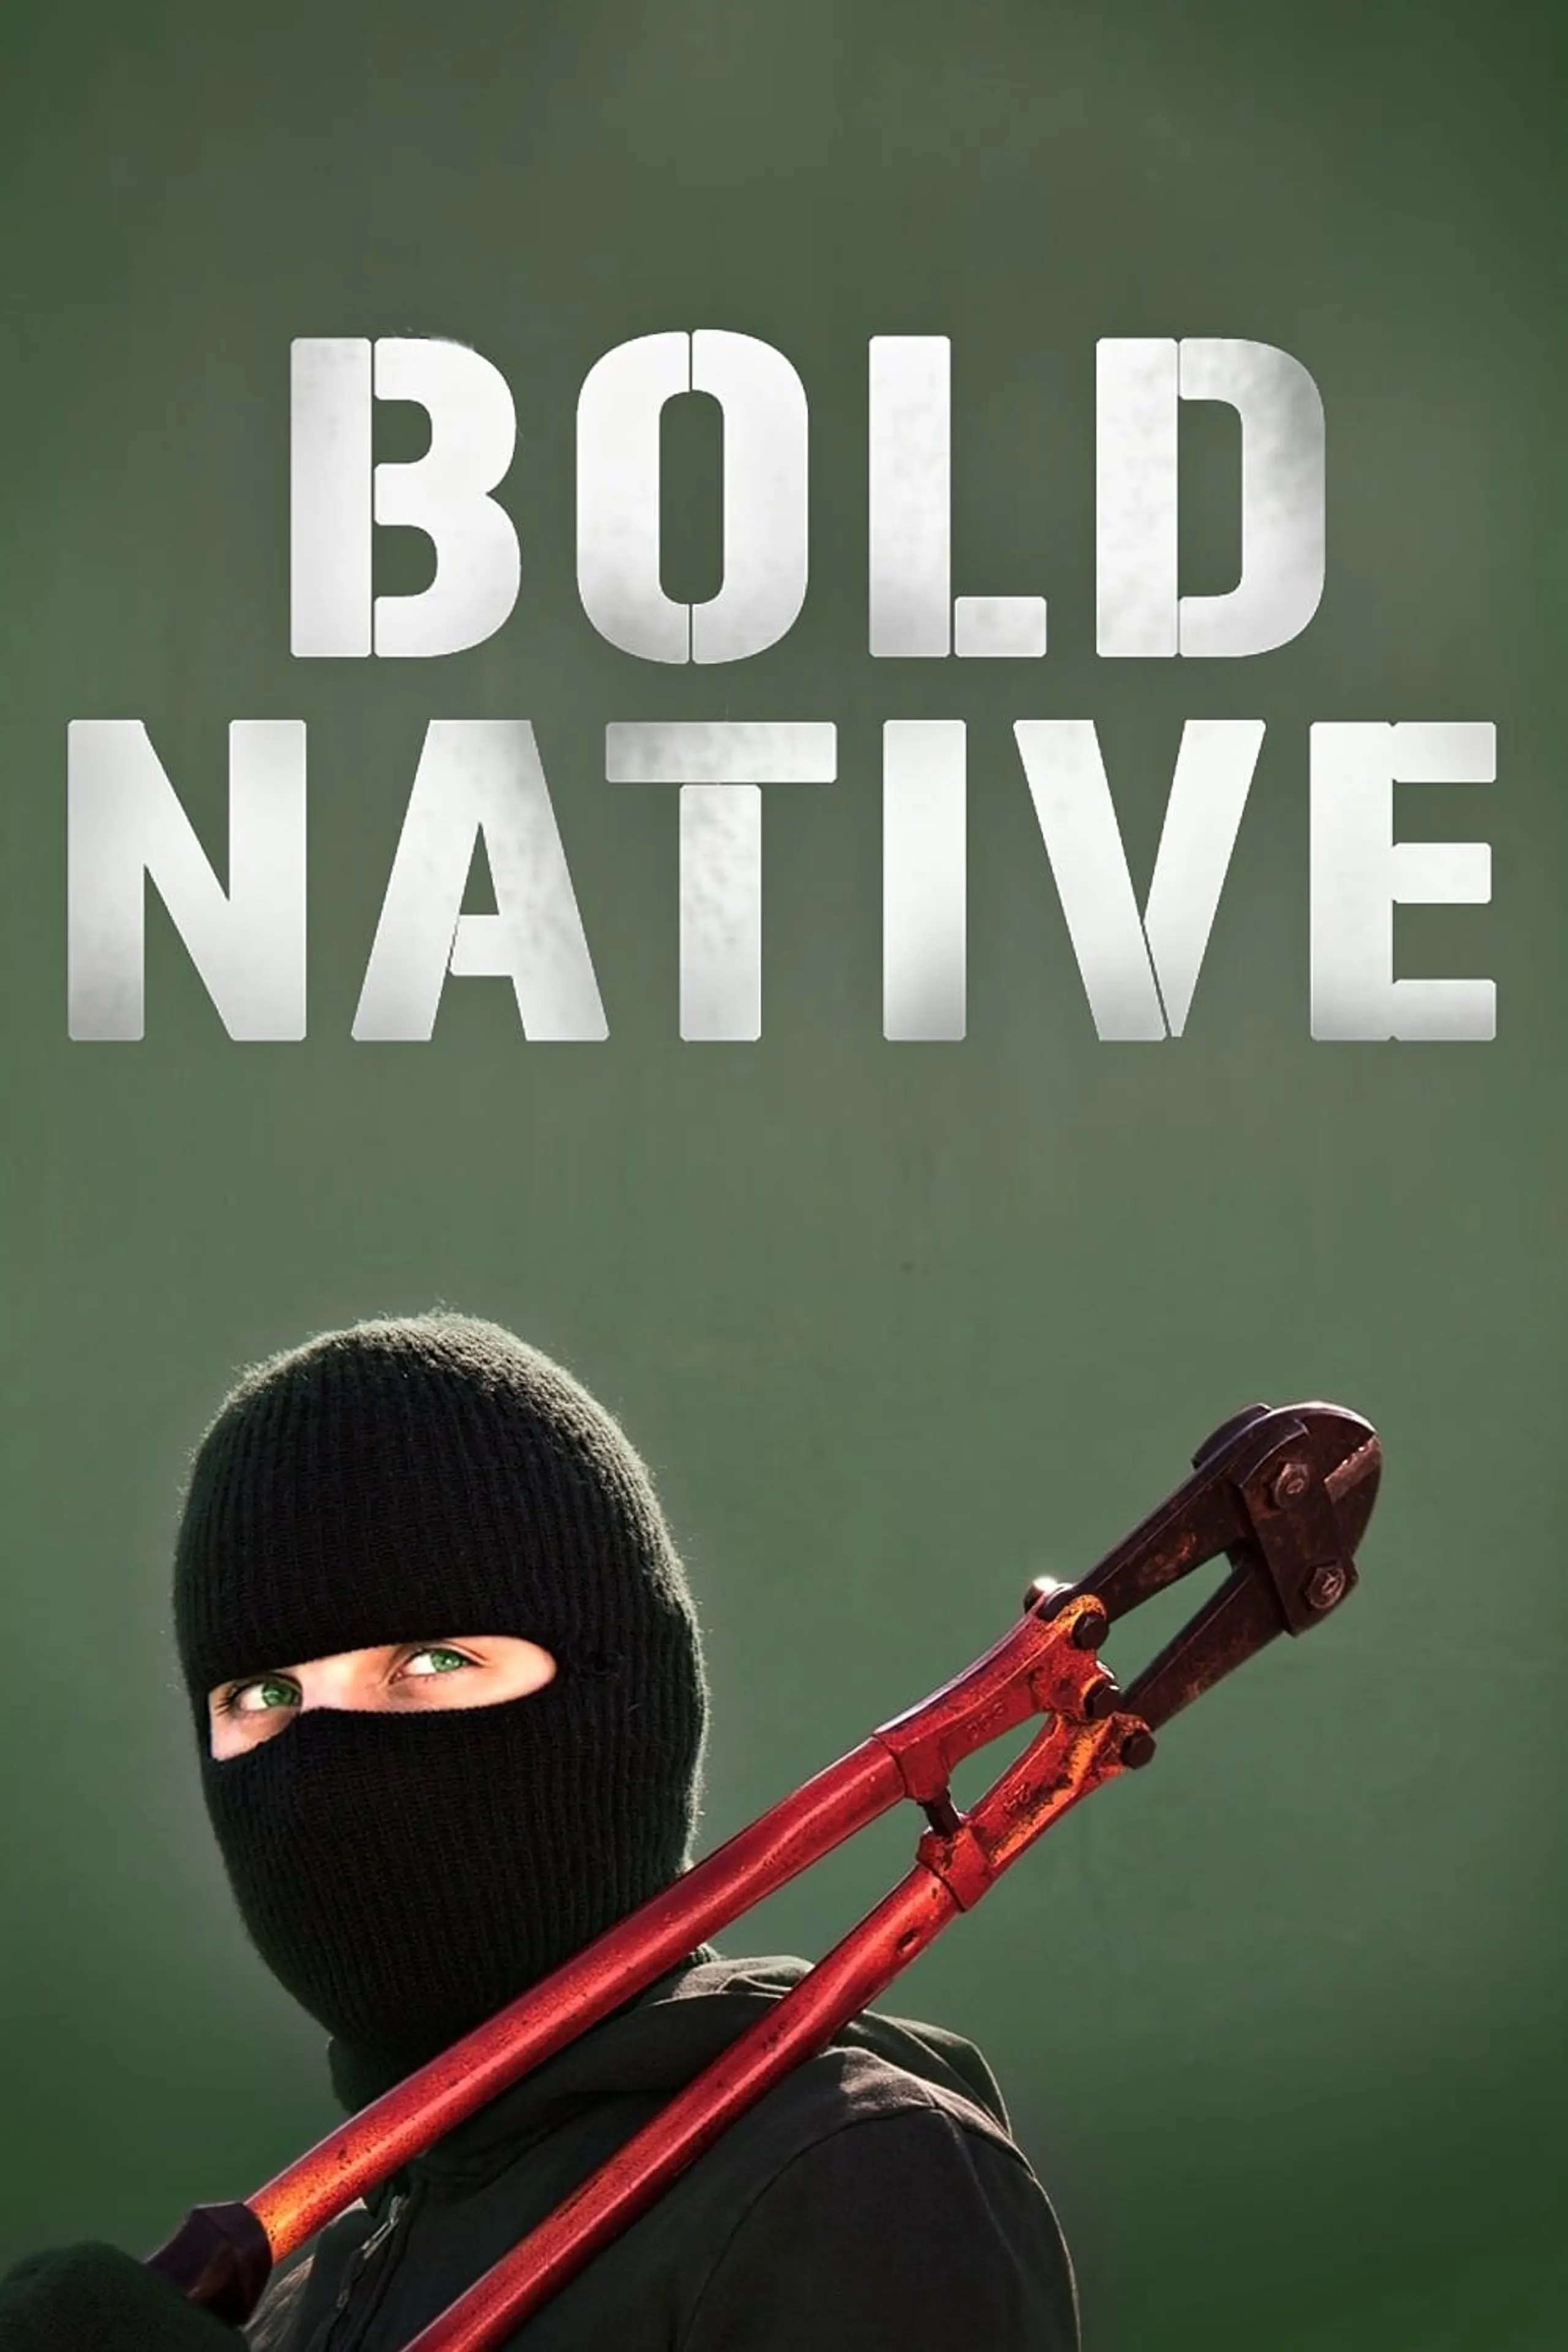 Bold Native